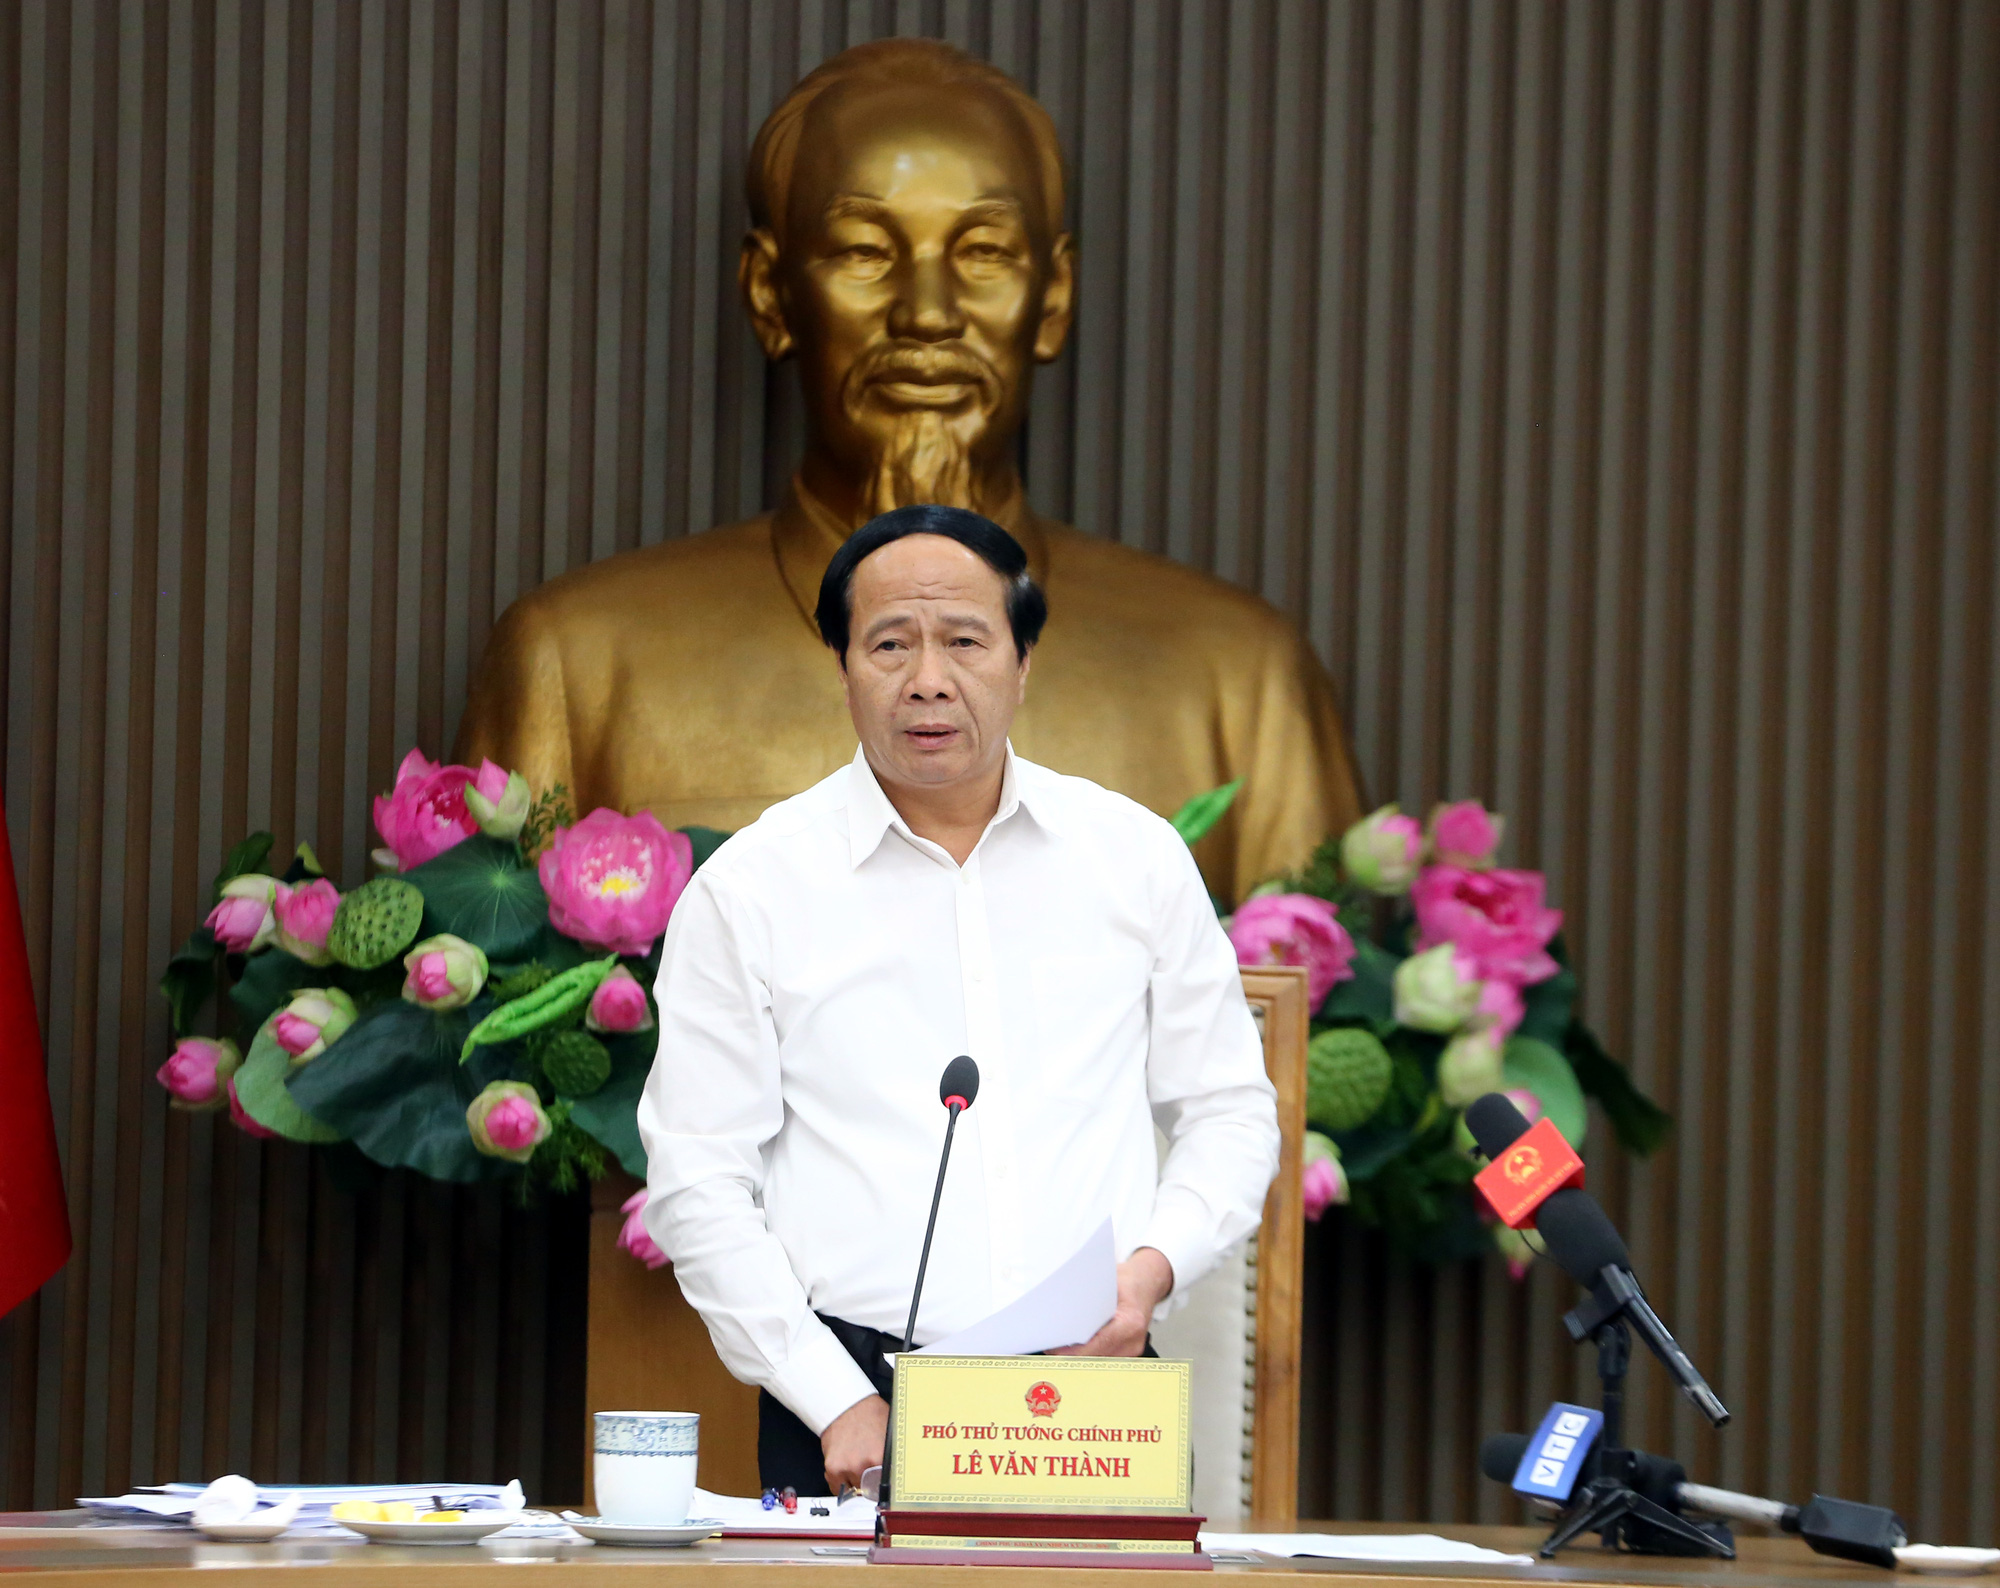 Phó Thủ tướng Lê Văn Thành: Triển khai quyết liệt các nhóm giải pháp, gỡ thẻ vàng IUU vào năm 2022 - Ảnh 1.